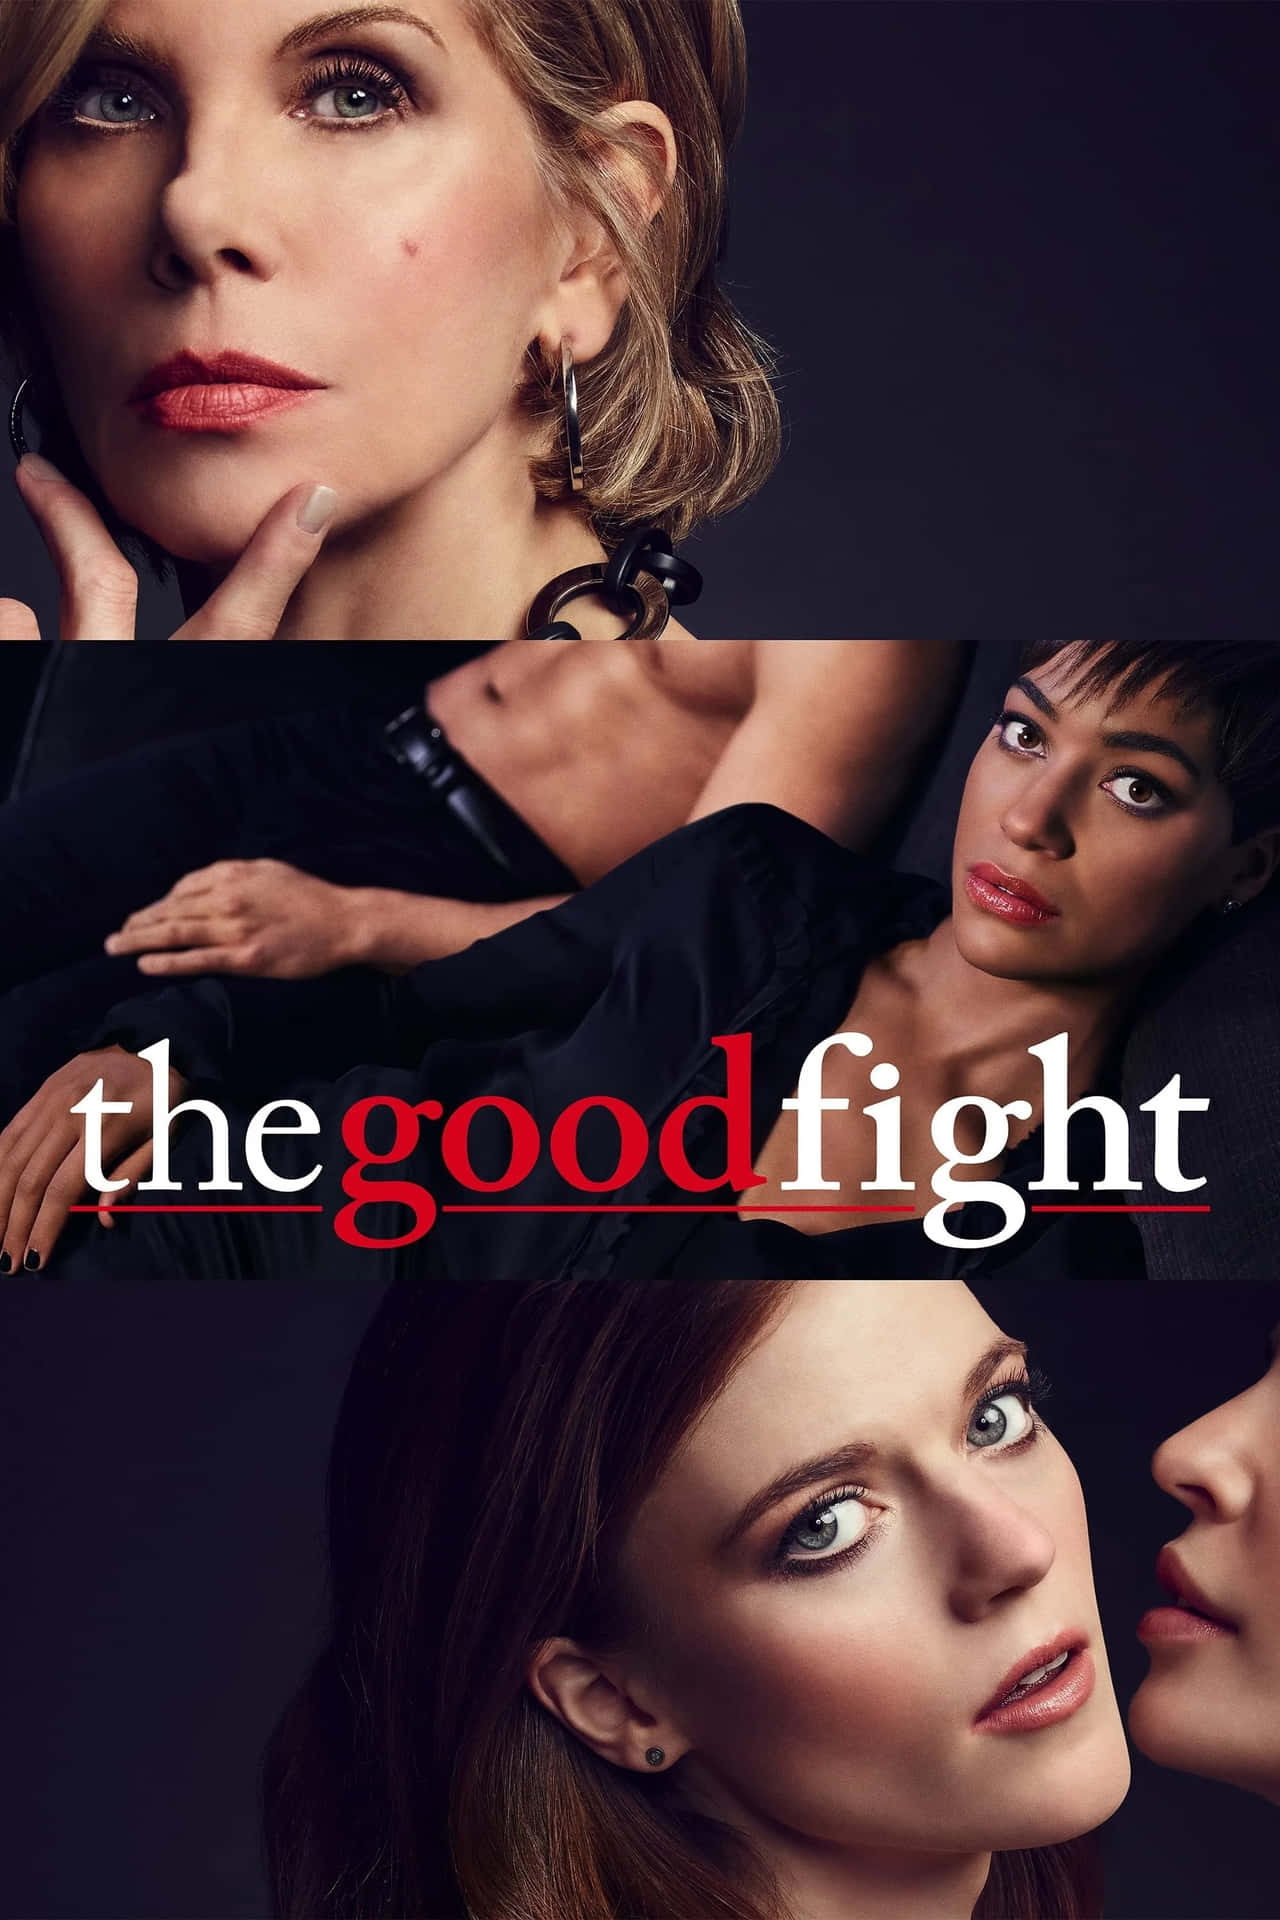 The Good Fight Cast Portrait Wallpaper